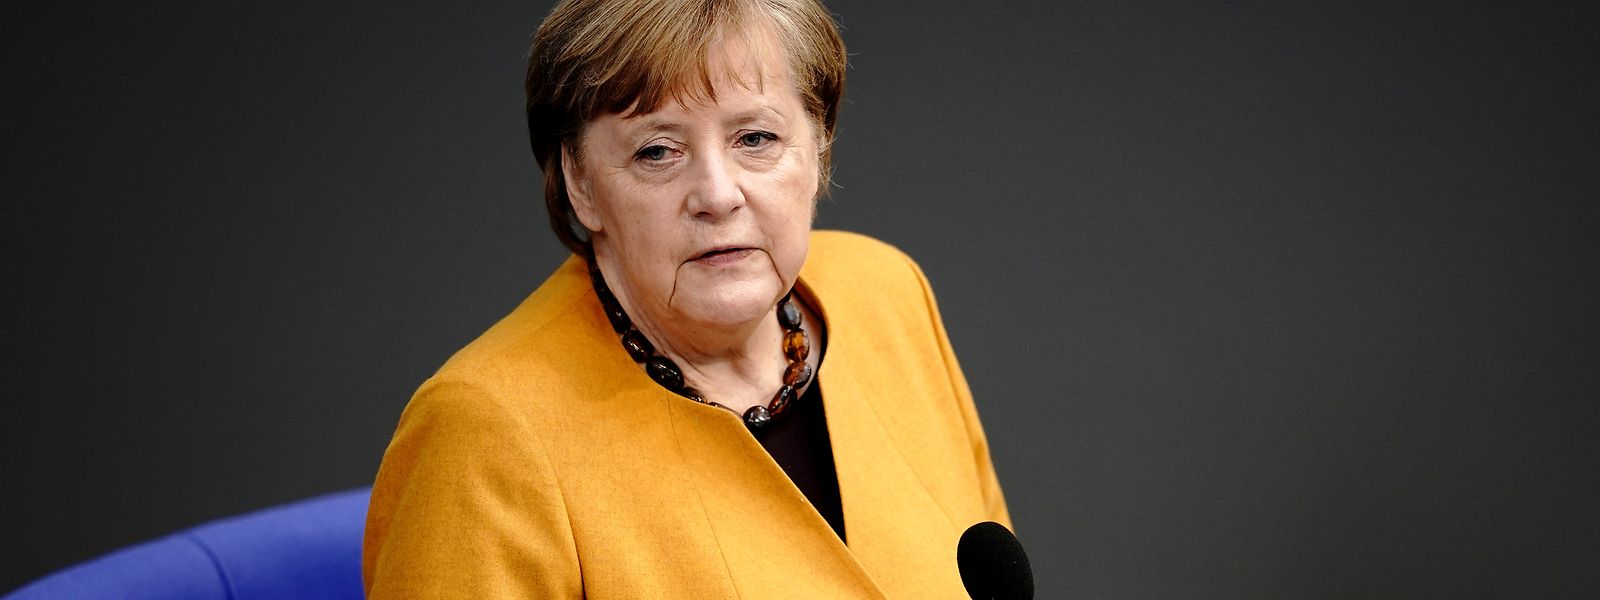 Bundeskanzlerin Angela Merkel (CDU) beantwortet im Bundestag bei der Regierungsbefragung die Fragen der Bundestagsabgeordneten.